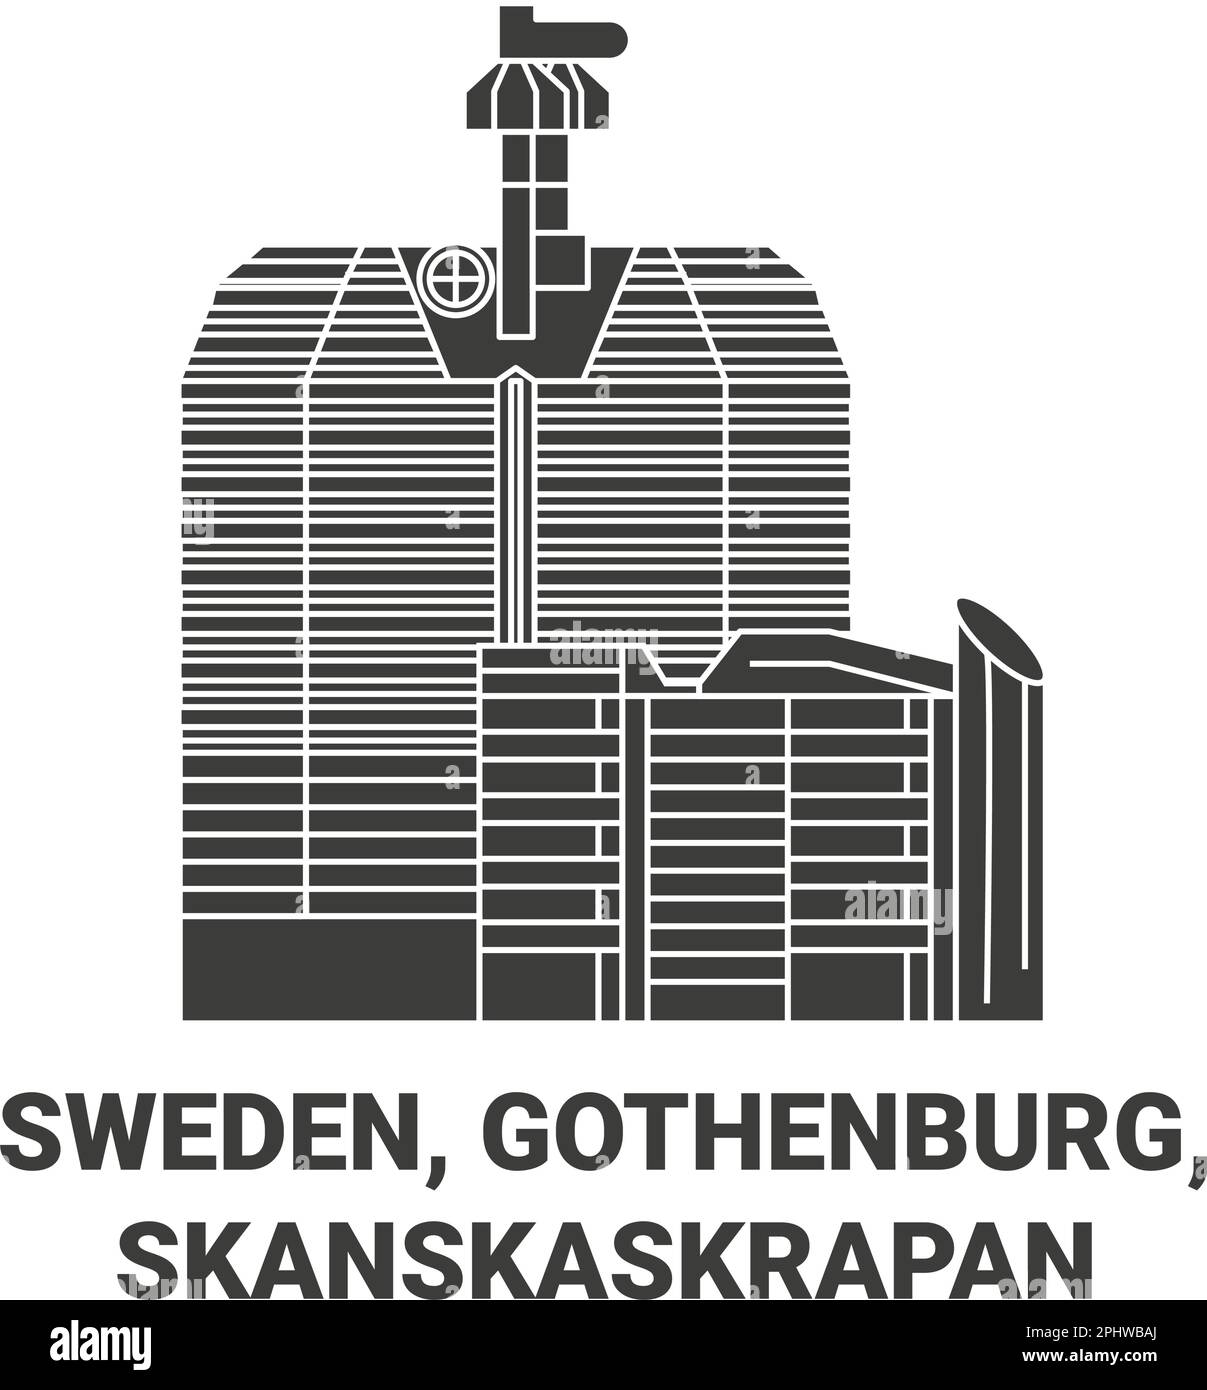 Schweden, Göteborg, Skanskaskrapan Reise-Wahrzeichen-Vektordarstellung Stock Vektor